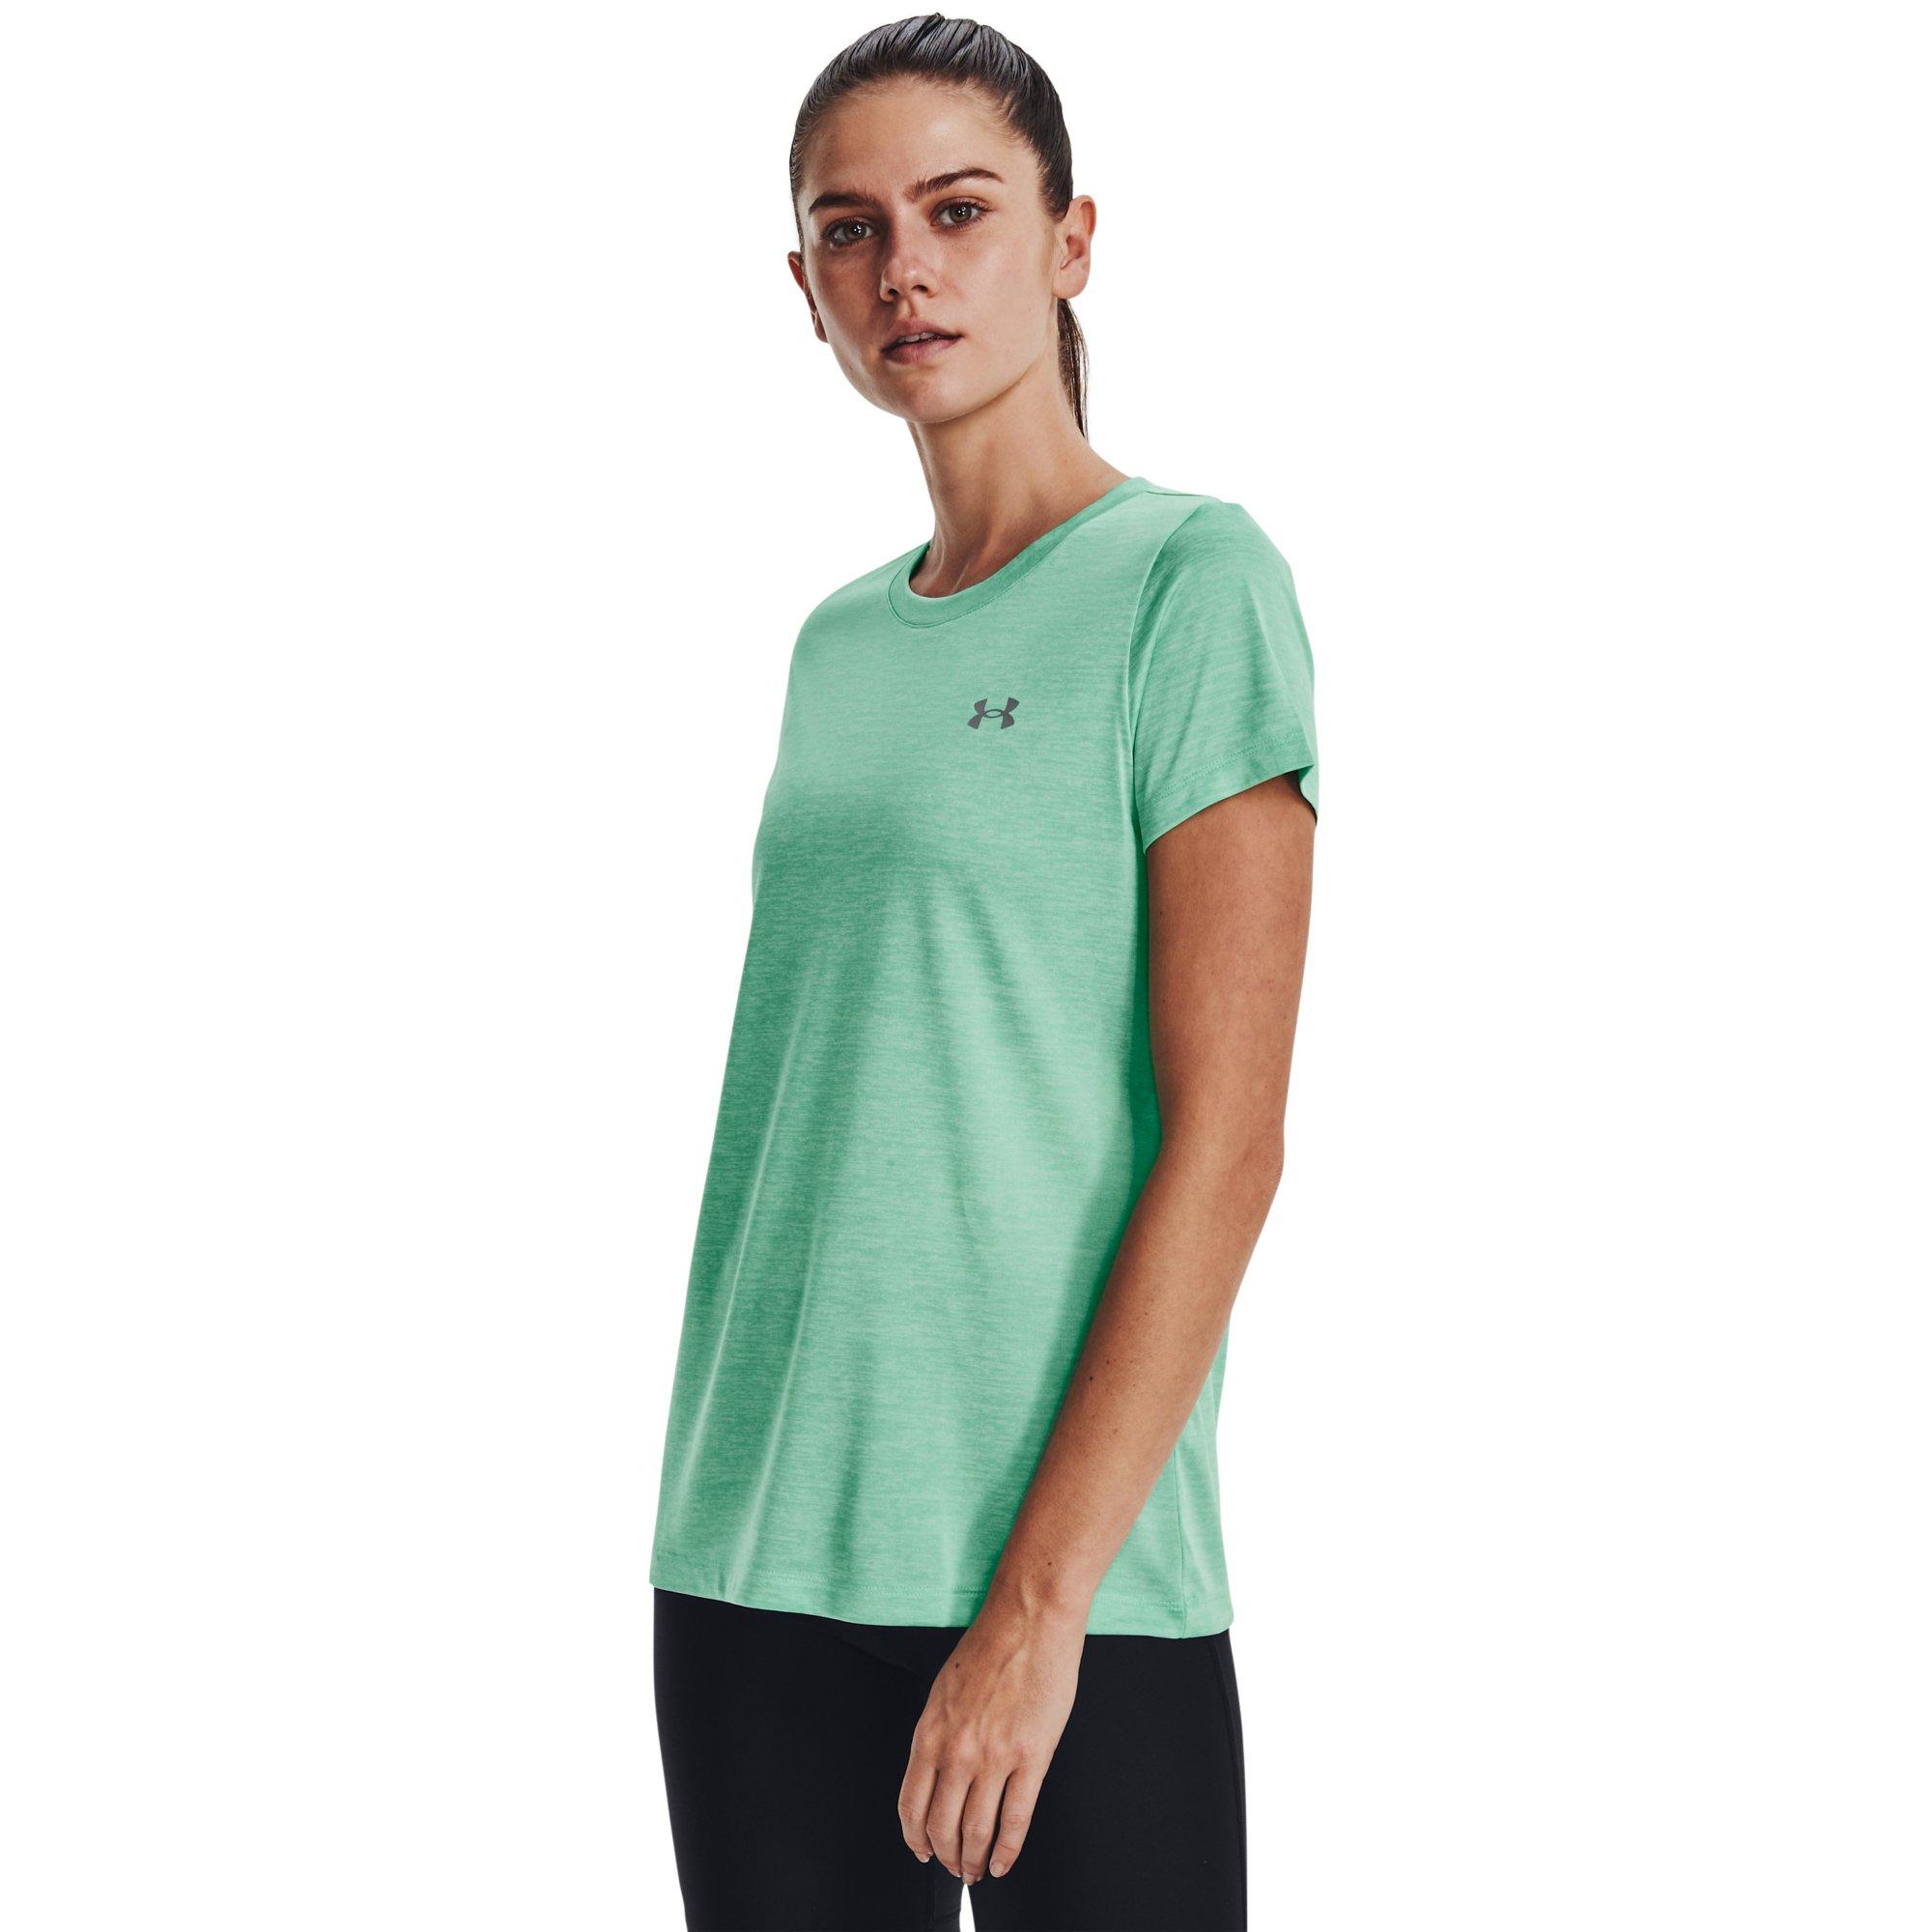 Under Armour Tech Twist Women's Tennis T-Shirt - Extreme Green